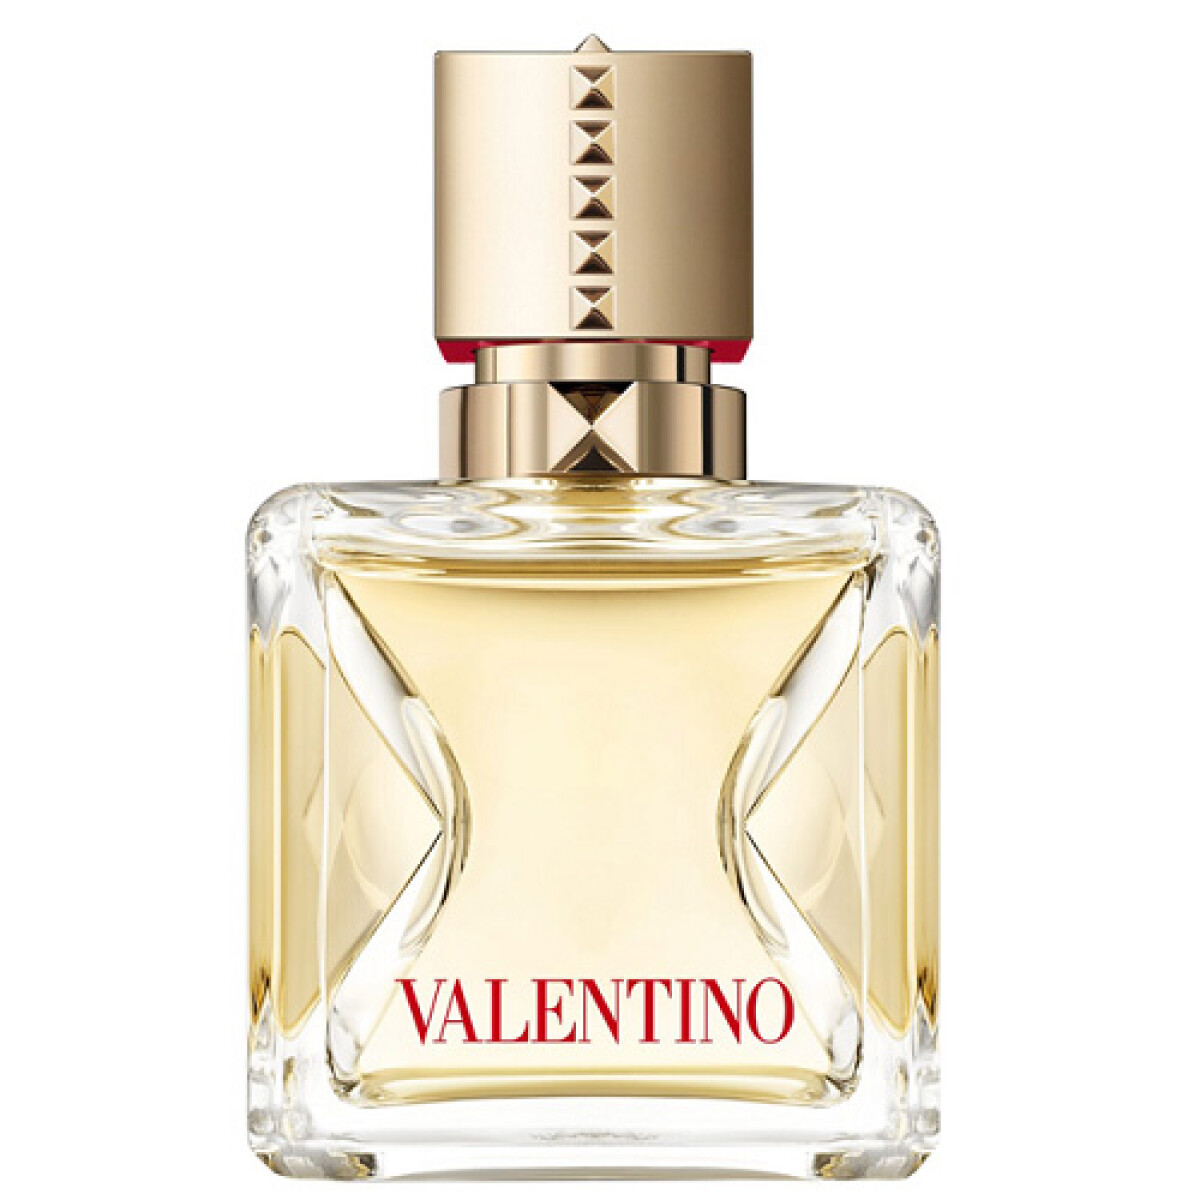 Perfume Valentino Voce Viva Edp 30ml 